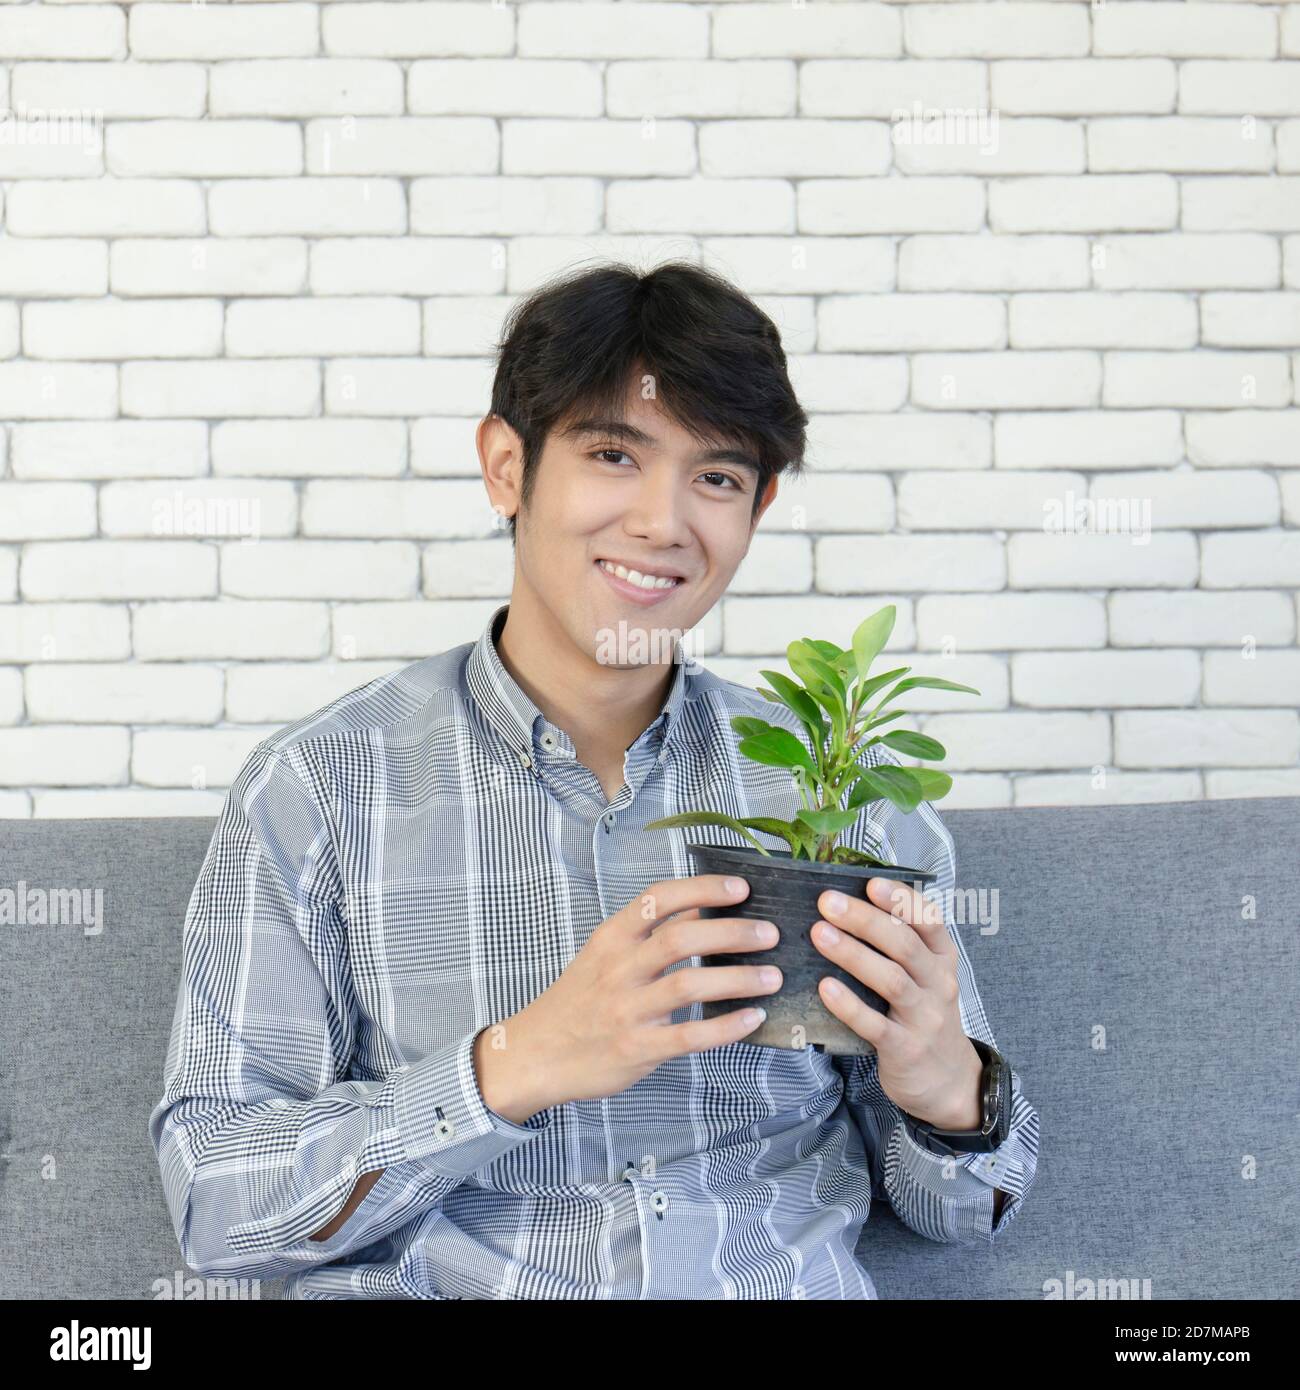 Ein junger asiatischer Mann hält einen Pflanztopf und lächelt hell. Stockfoto